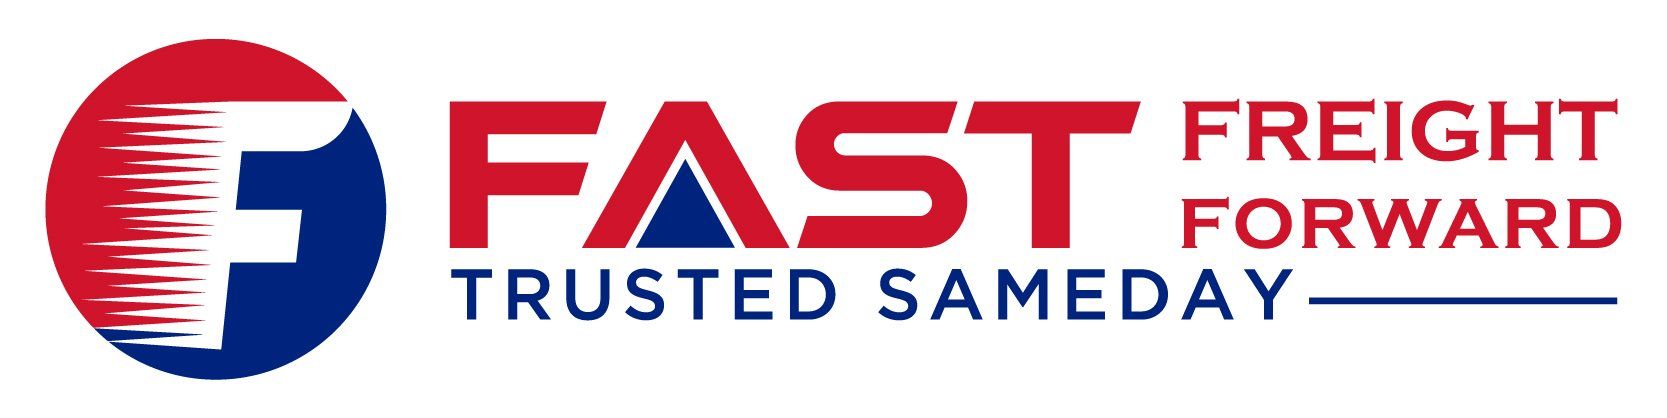 Fast_Freight_Forward-logo